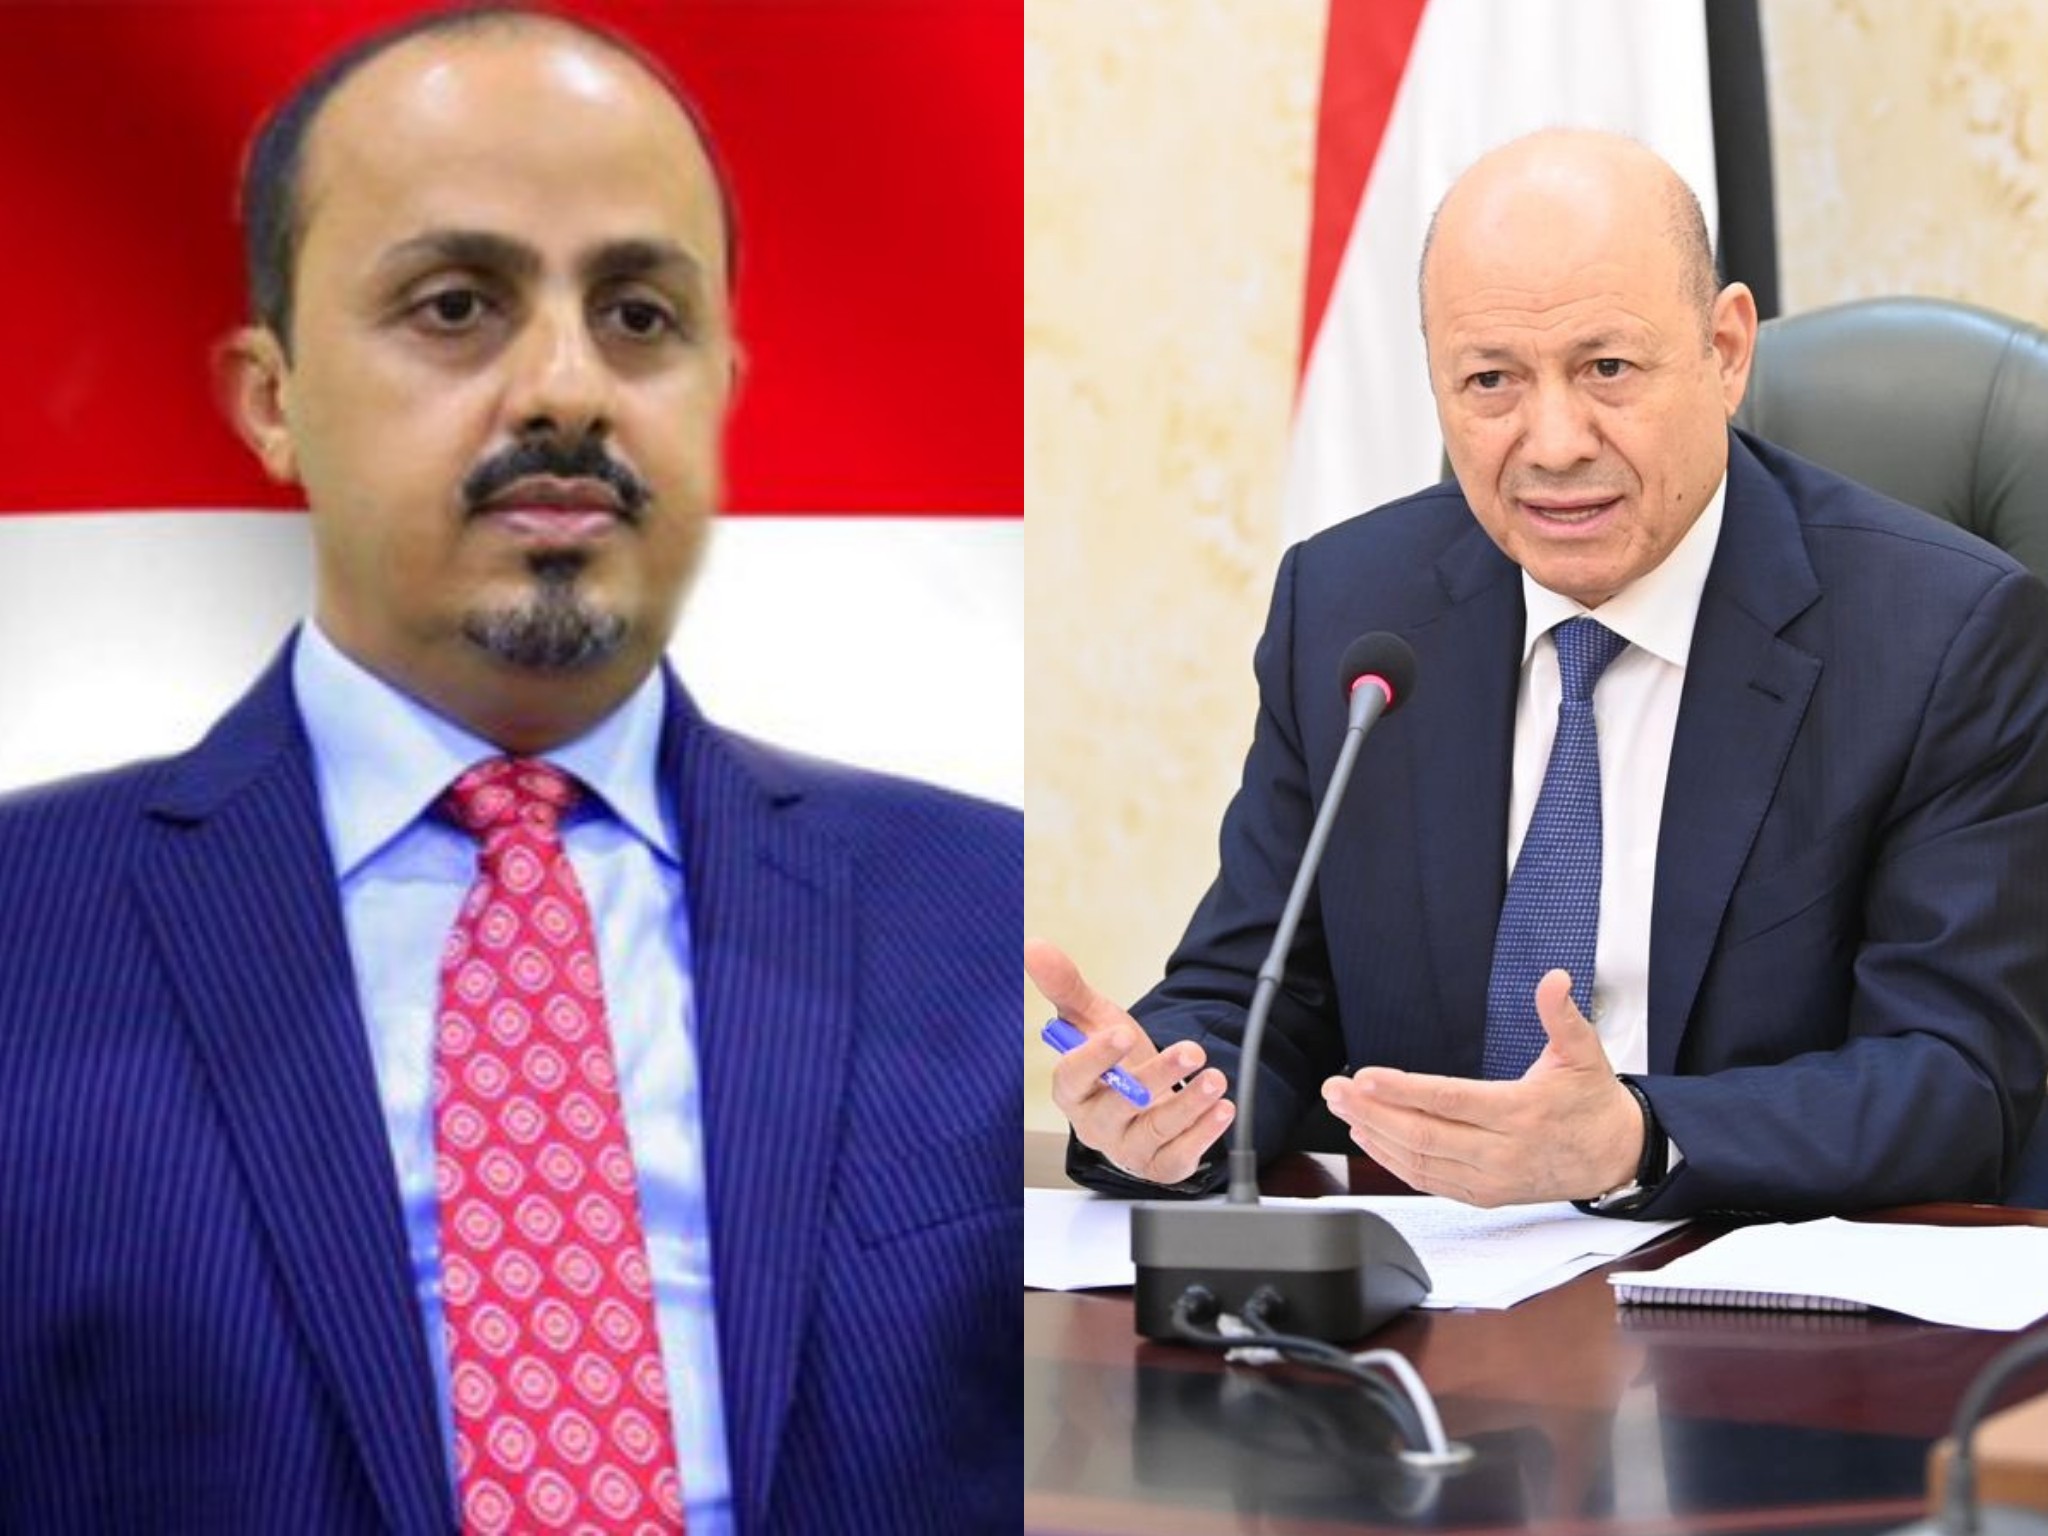 وزير الإعلام والثقافة "الإرياني" يهنئ الرئيس العليمي وكافة الشعب اليمني بمناسبة عيد الأضحى المبارك